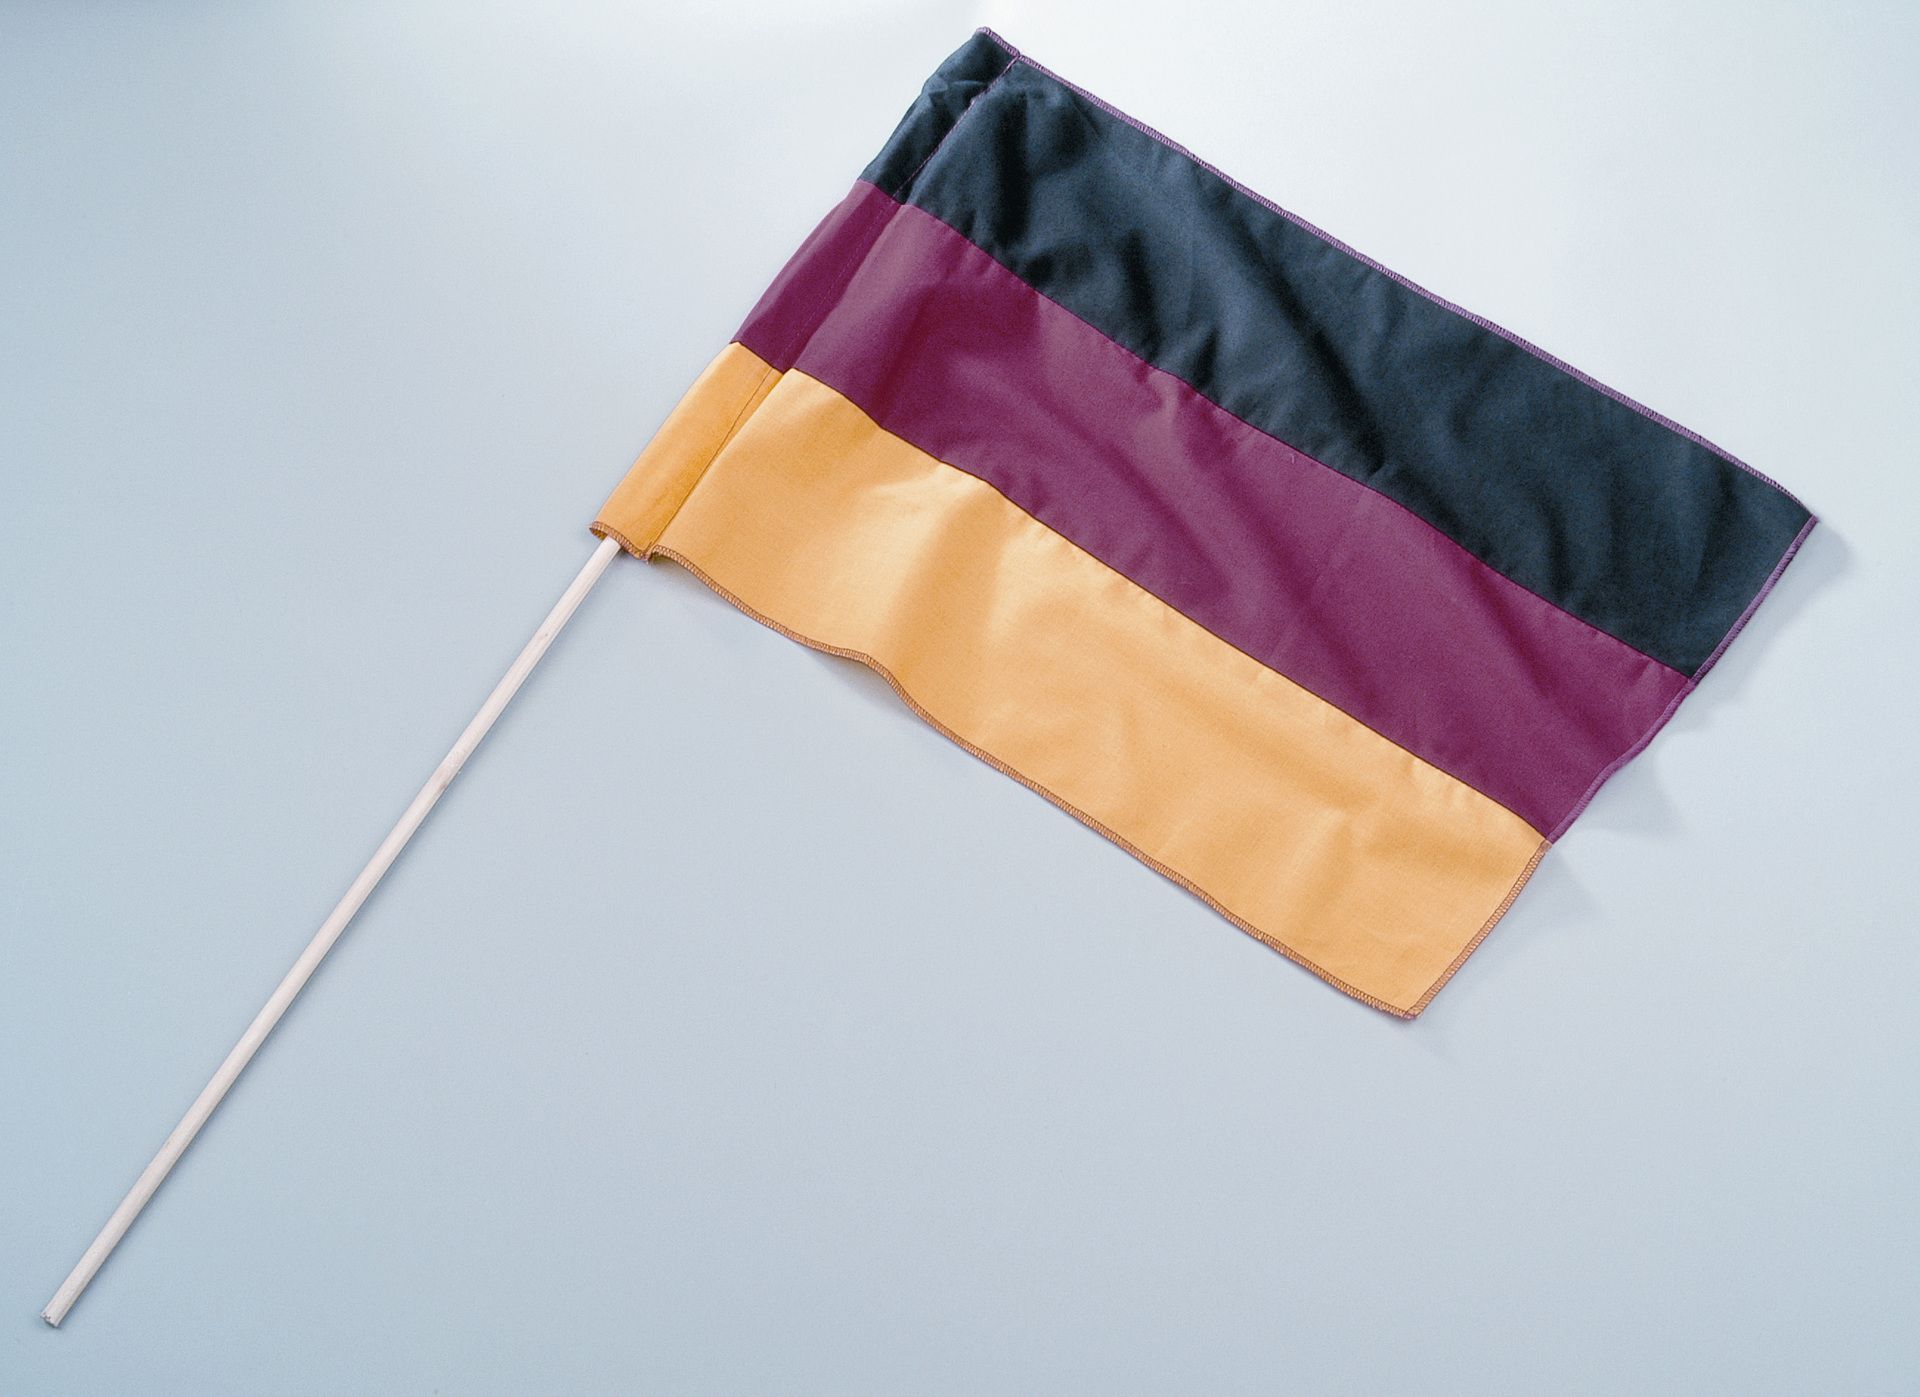 Deutschland-Flagge mit Stab, 30x45 cm - Unikum Geschenke